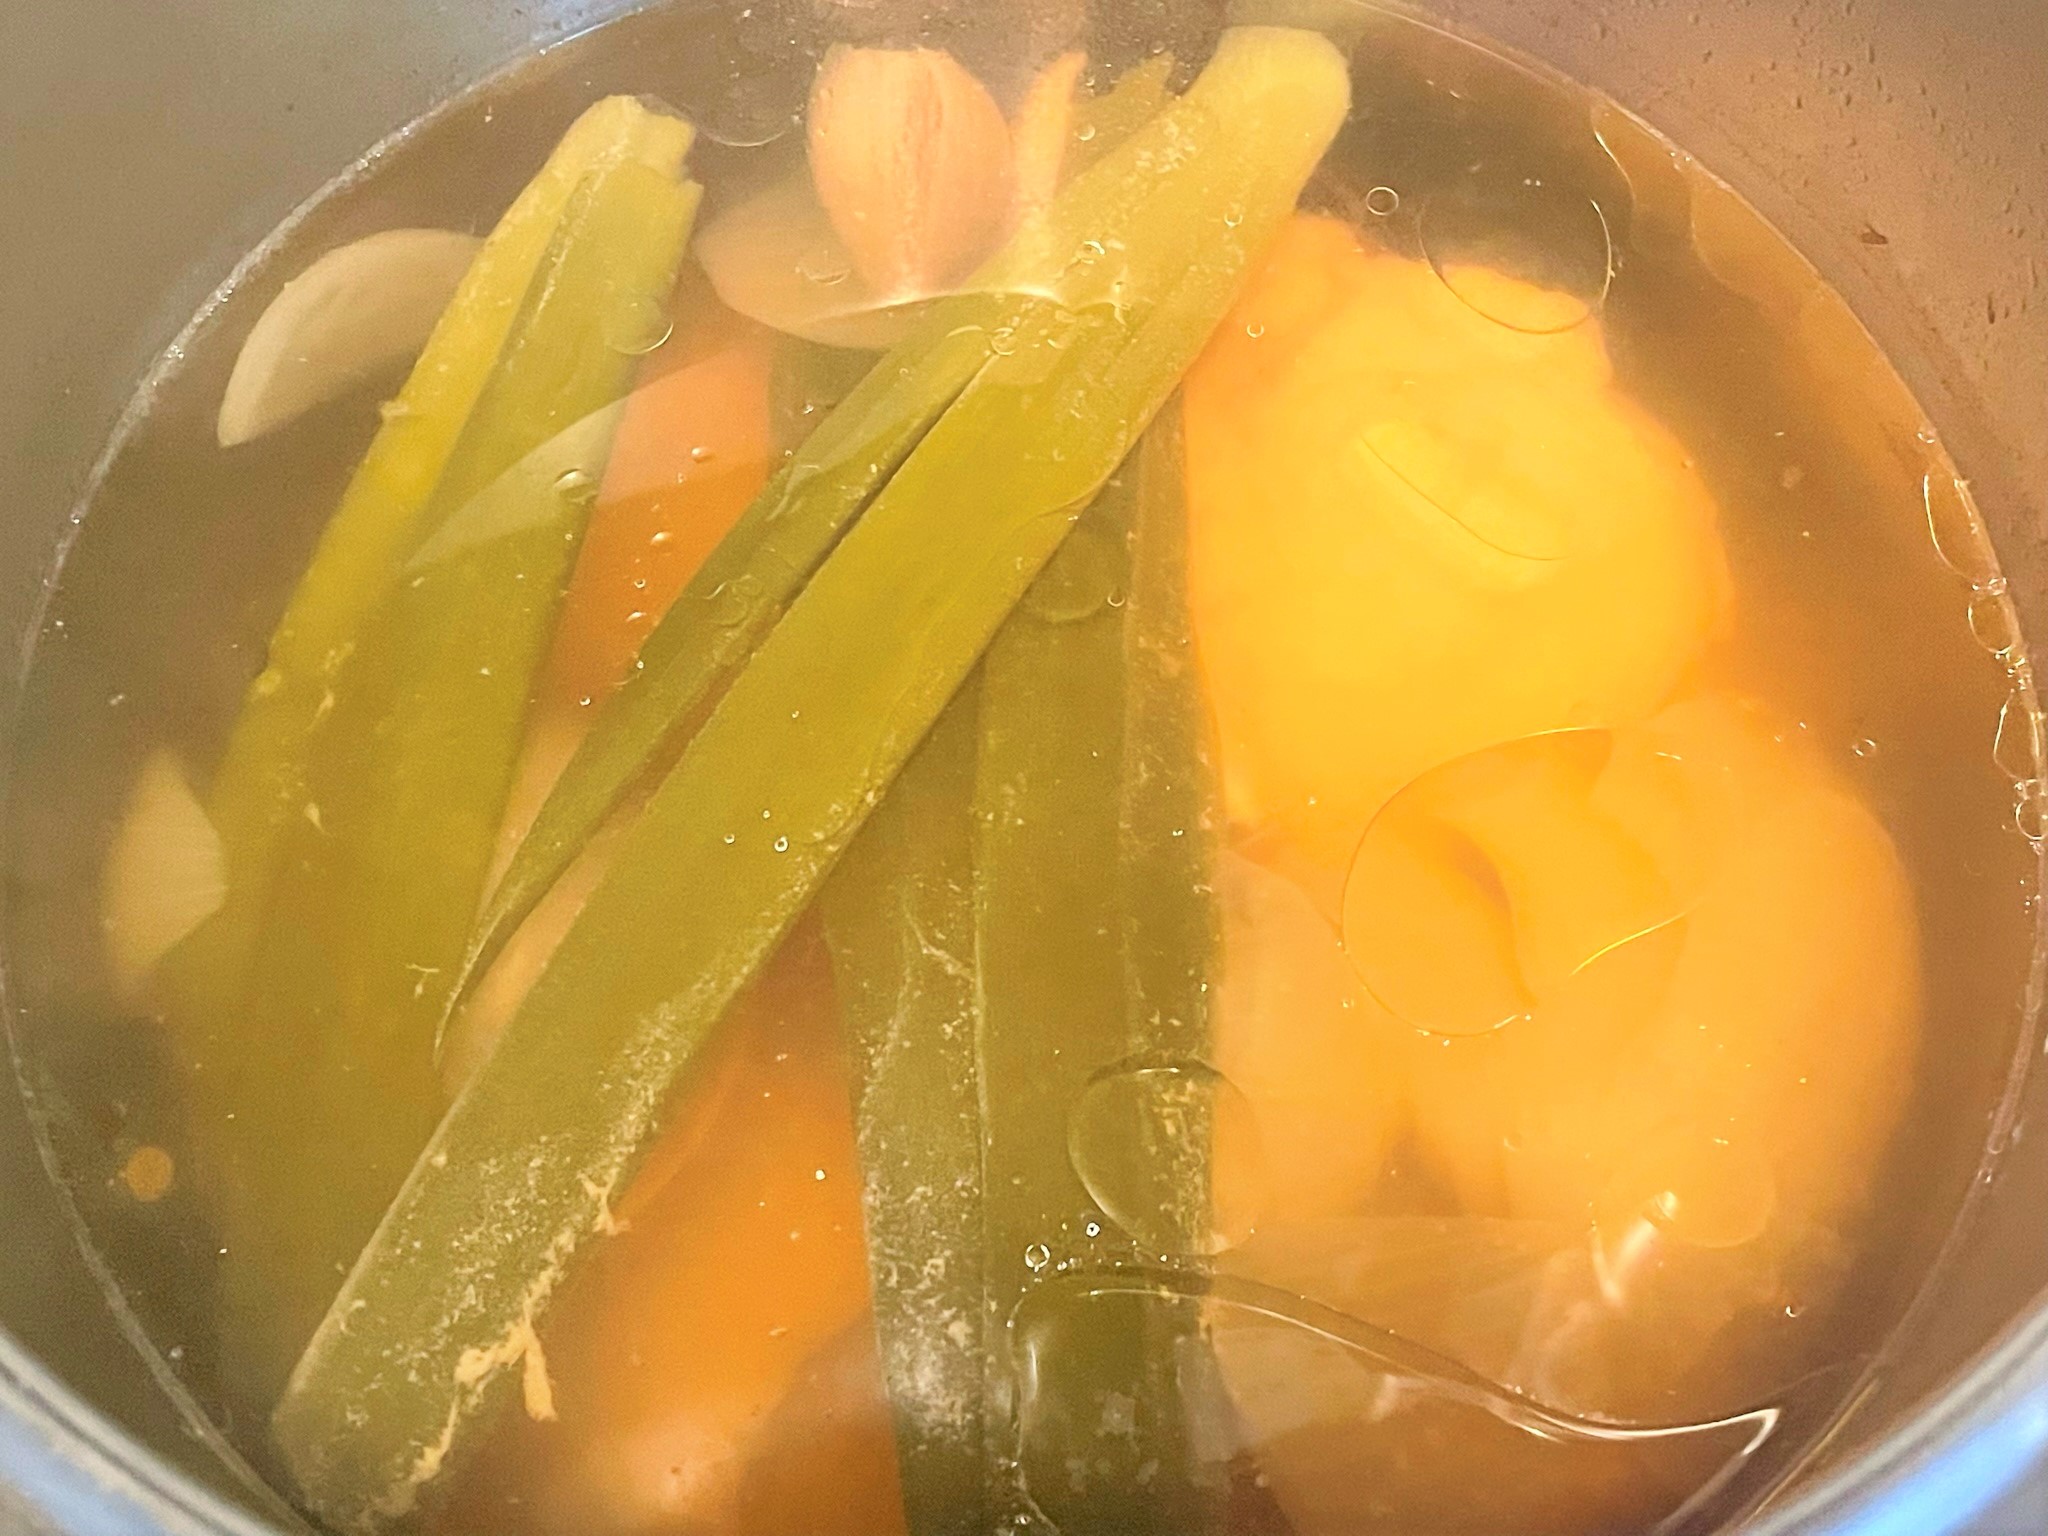 福井県産のお米"越穂"を使ったフォータイプの麺をお取り寄せしてみました！